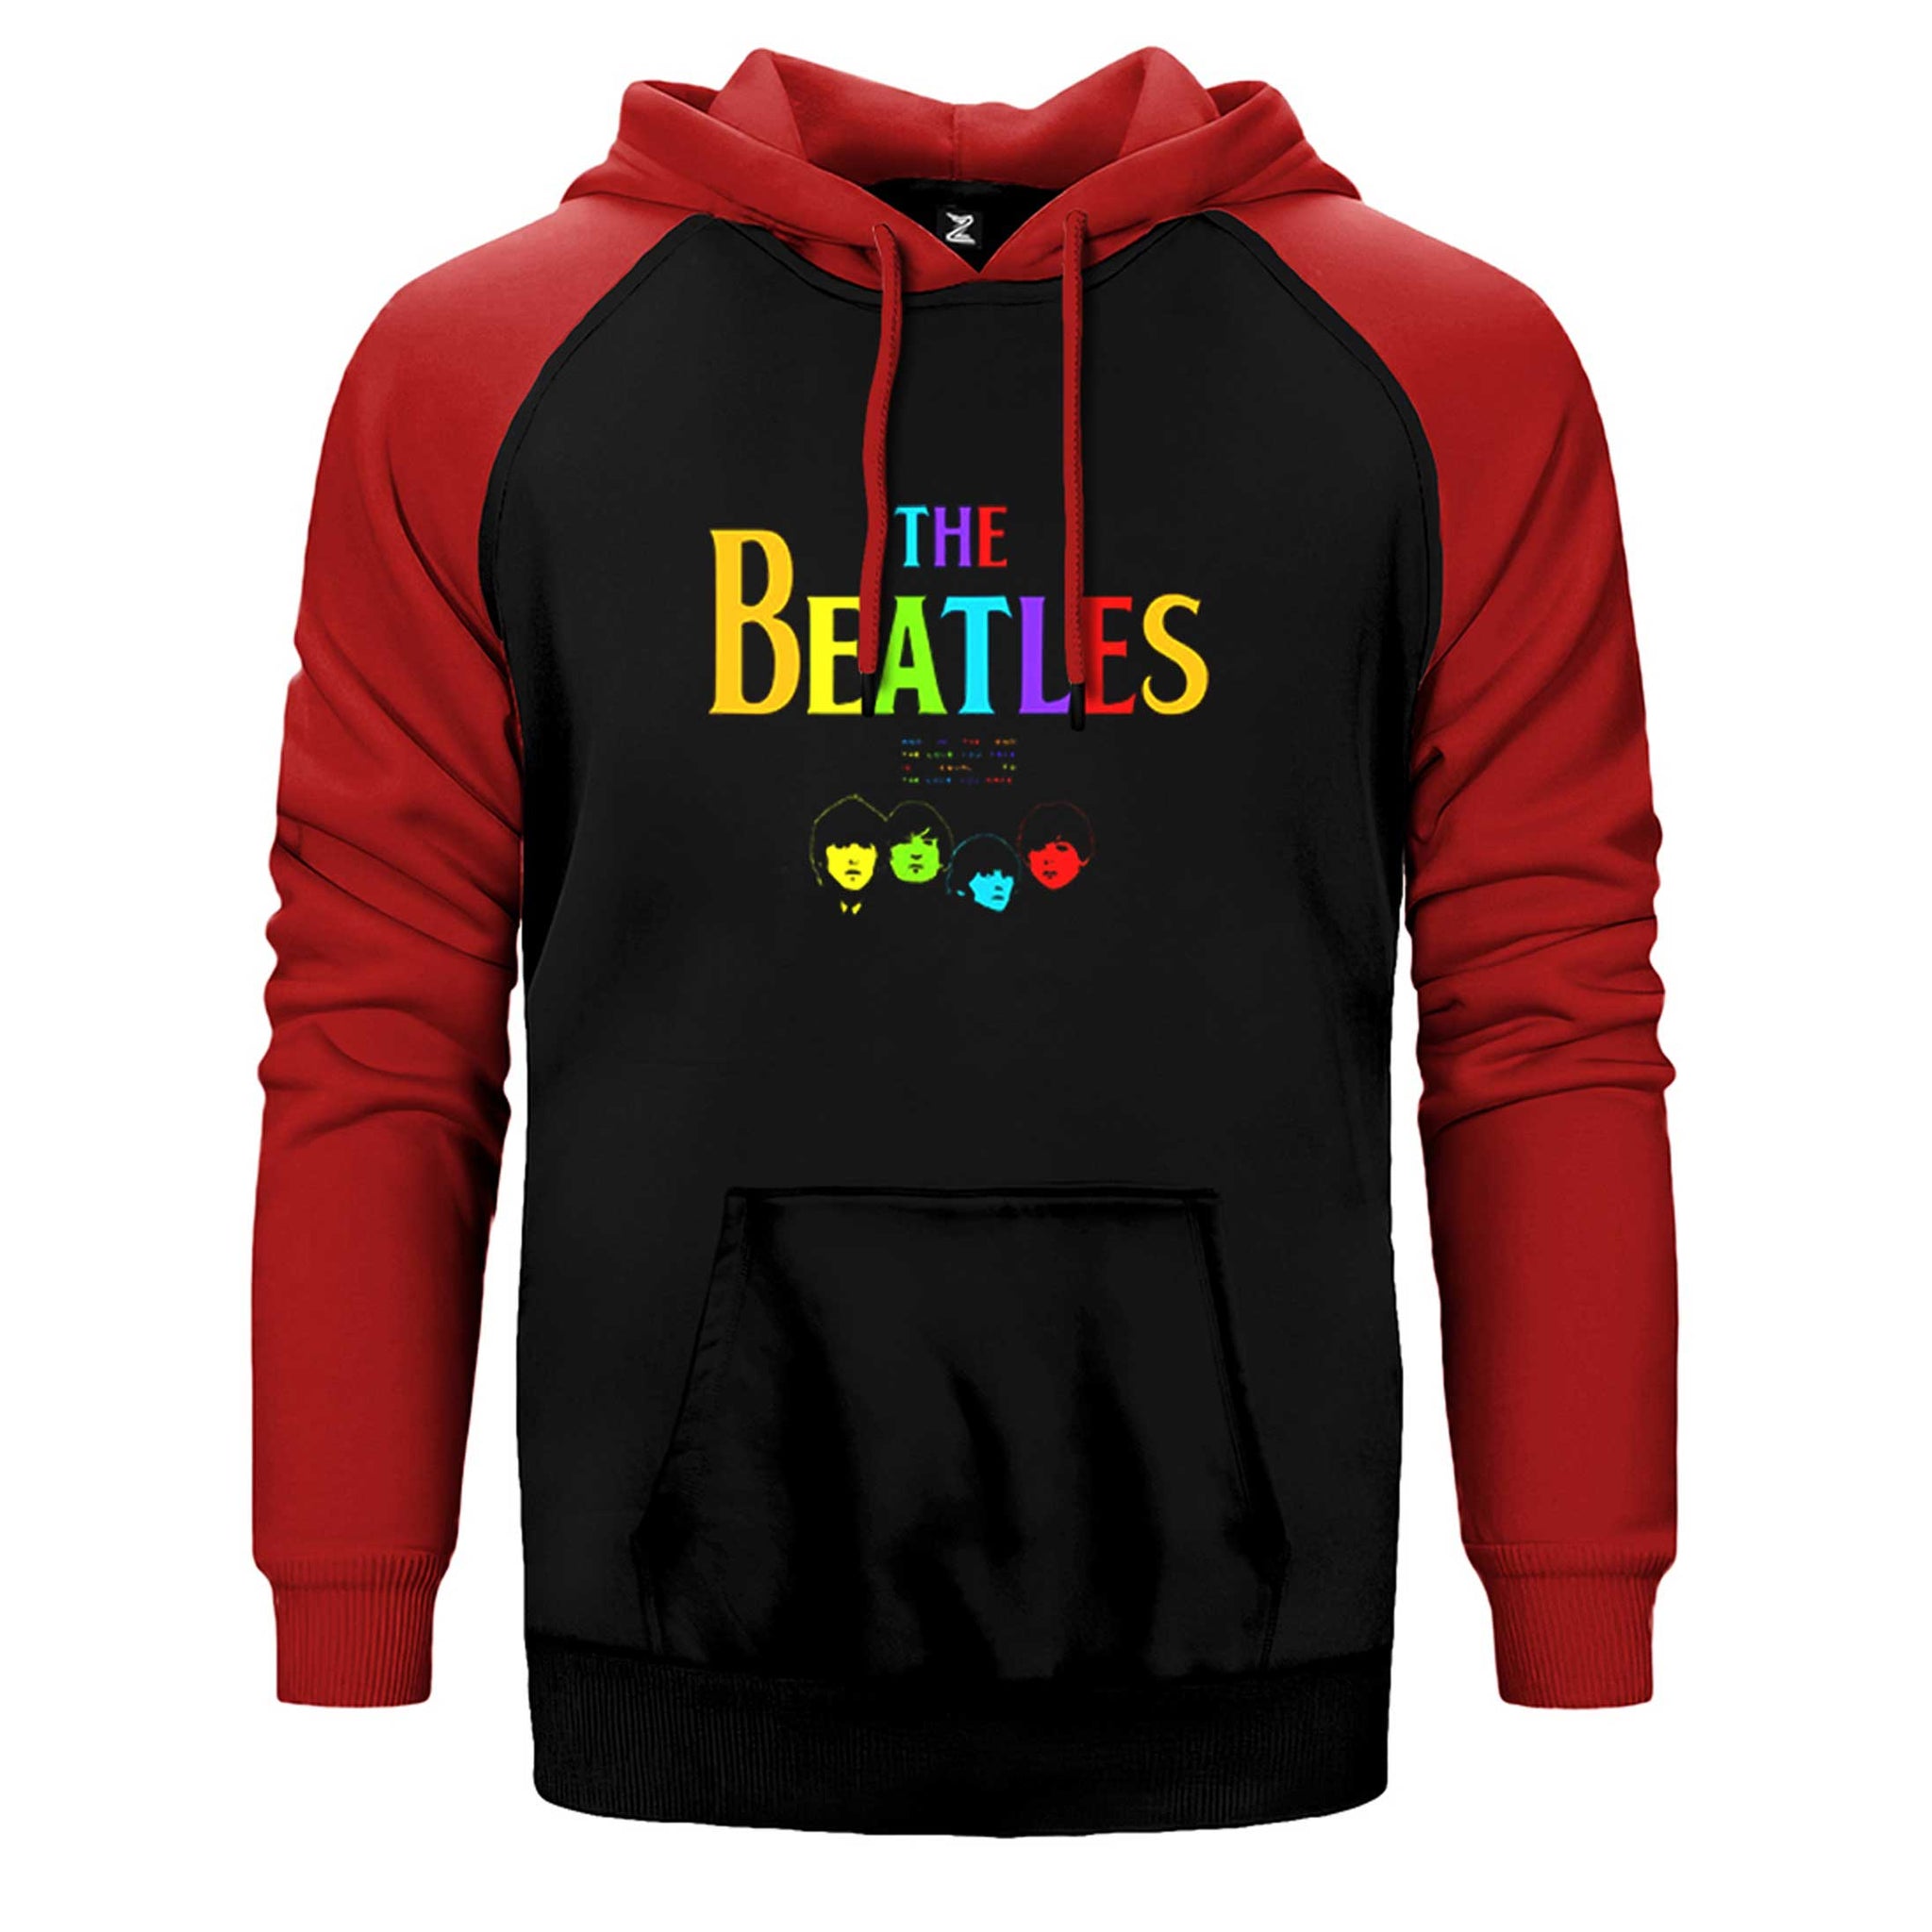 The Beatles Rainbow Çift Renk Reglan Kol Sweatshirt / Hoodie